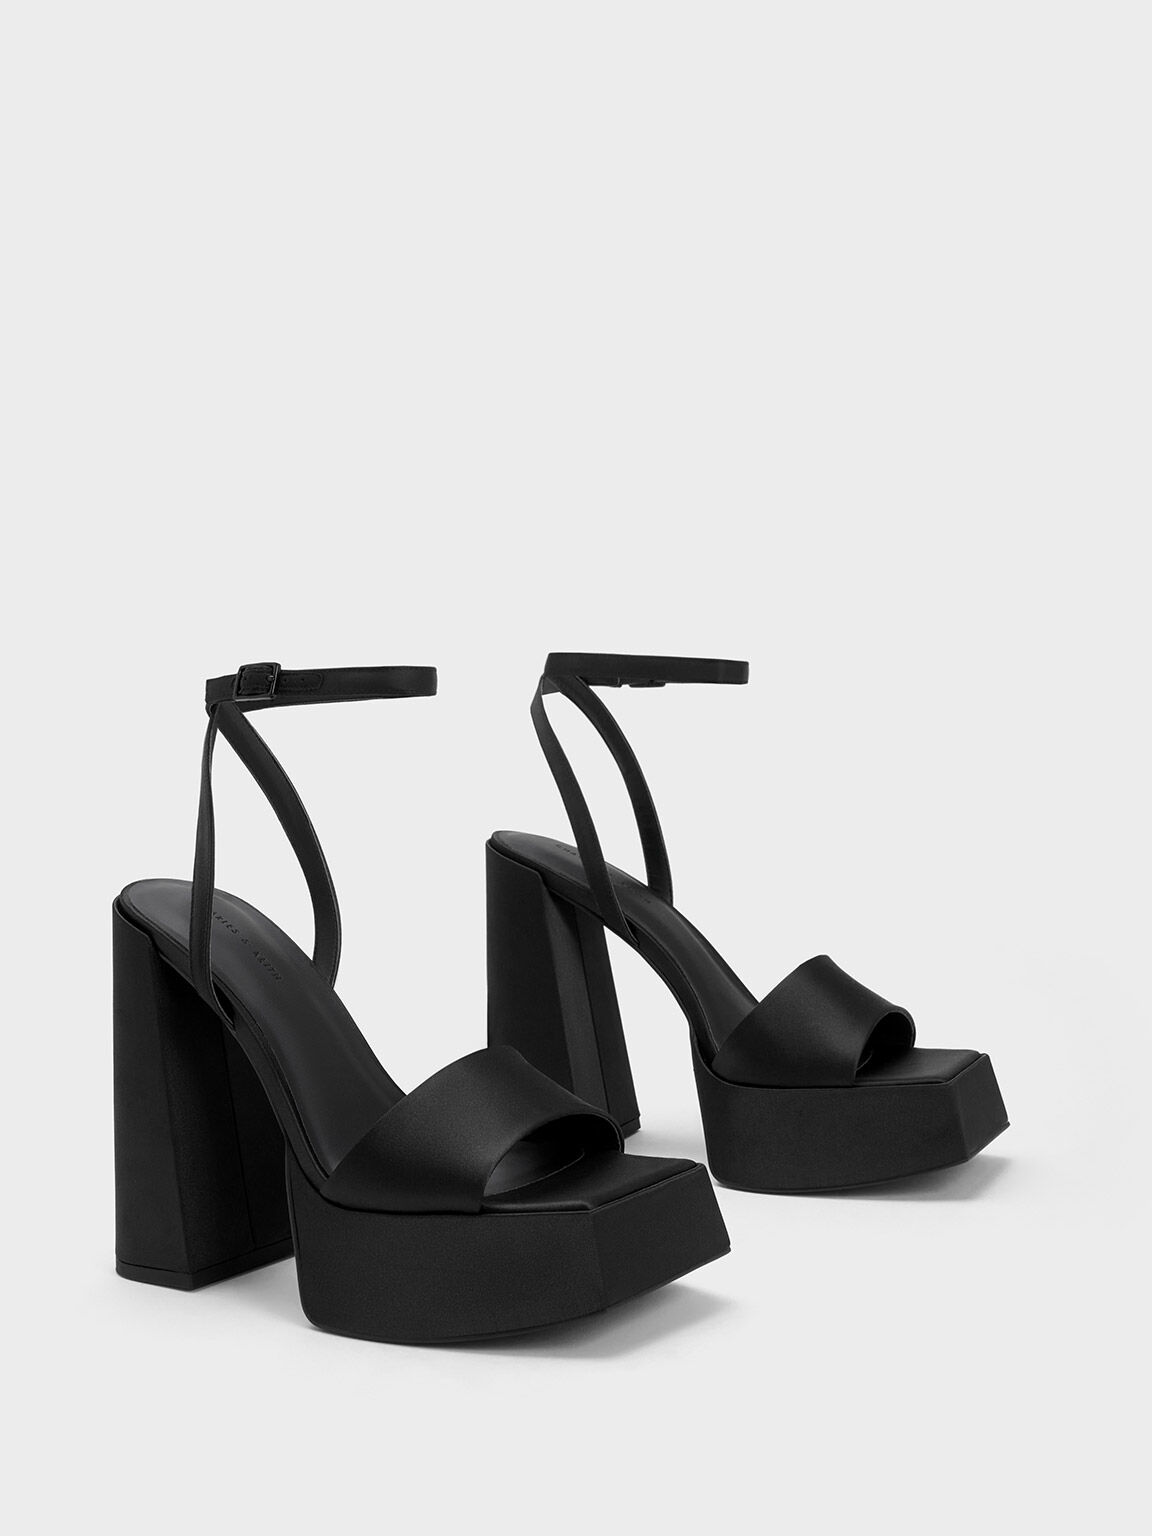 Sandal Platform Ankle-Strap, Black Textured, hi-res